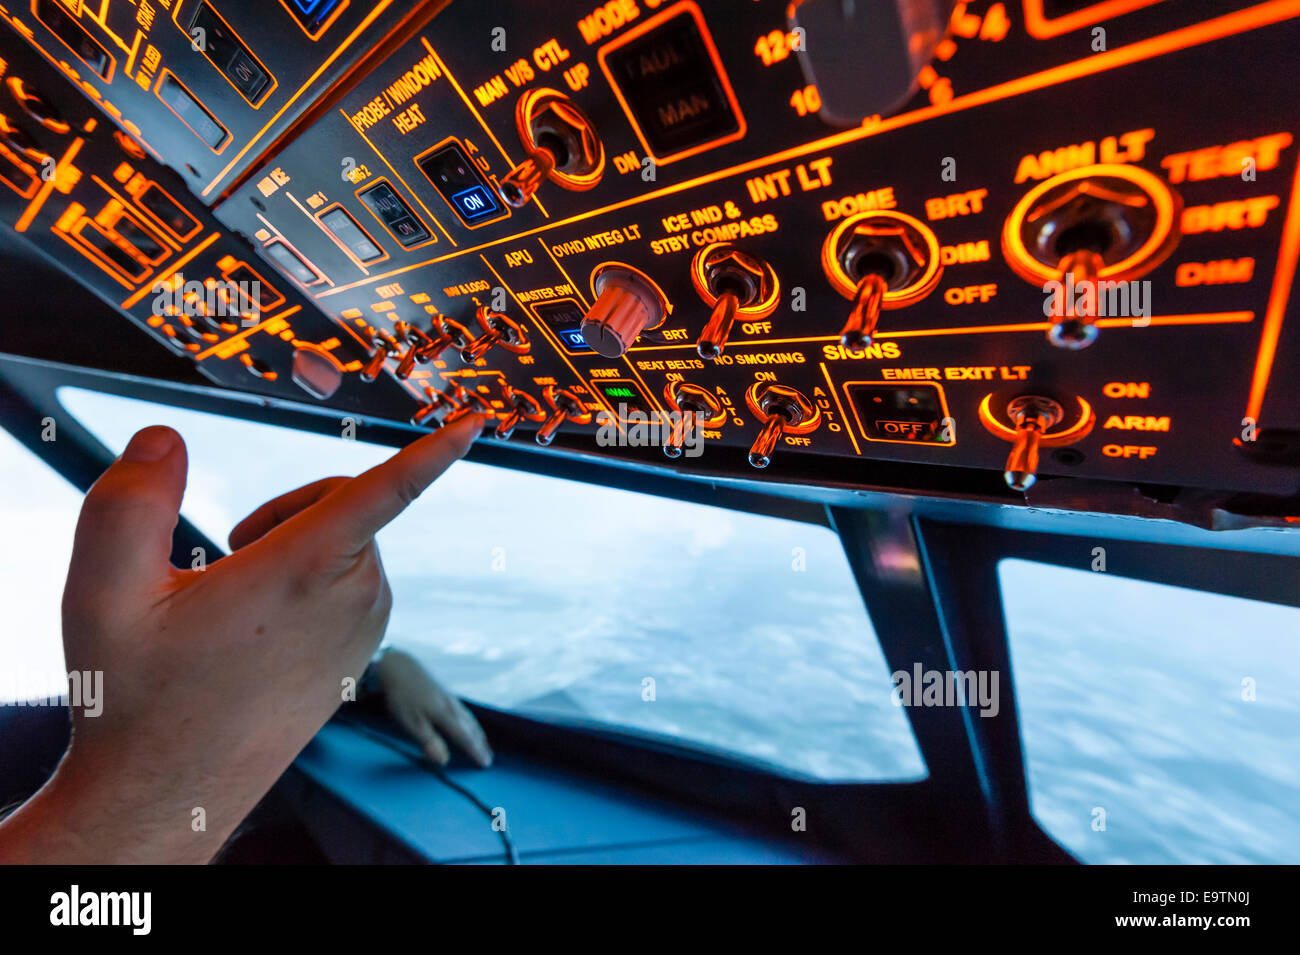 Cabina de un simulador de vuelo Airbus A320 que se utiliza para la formación profesional de los pilotos de líneas aéreas (durante el 'vuelo') Foto de stock